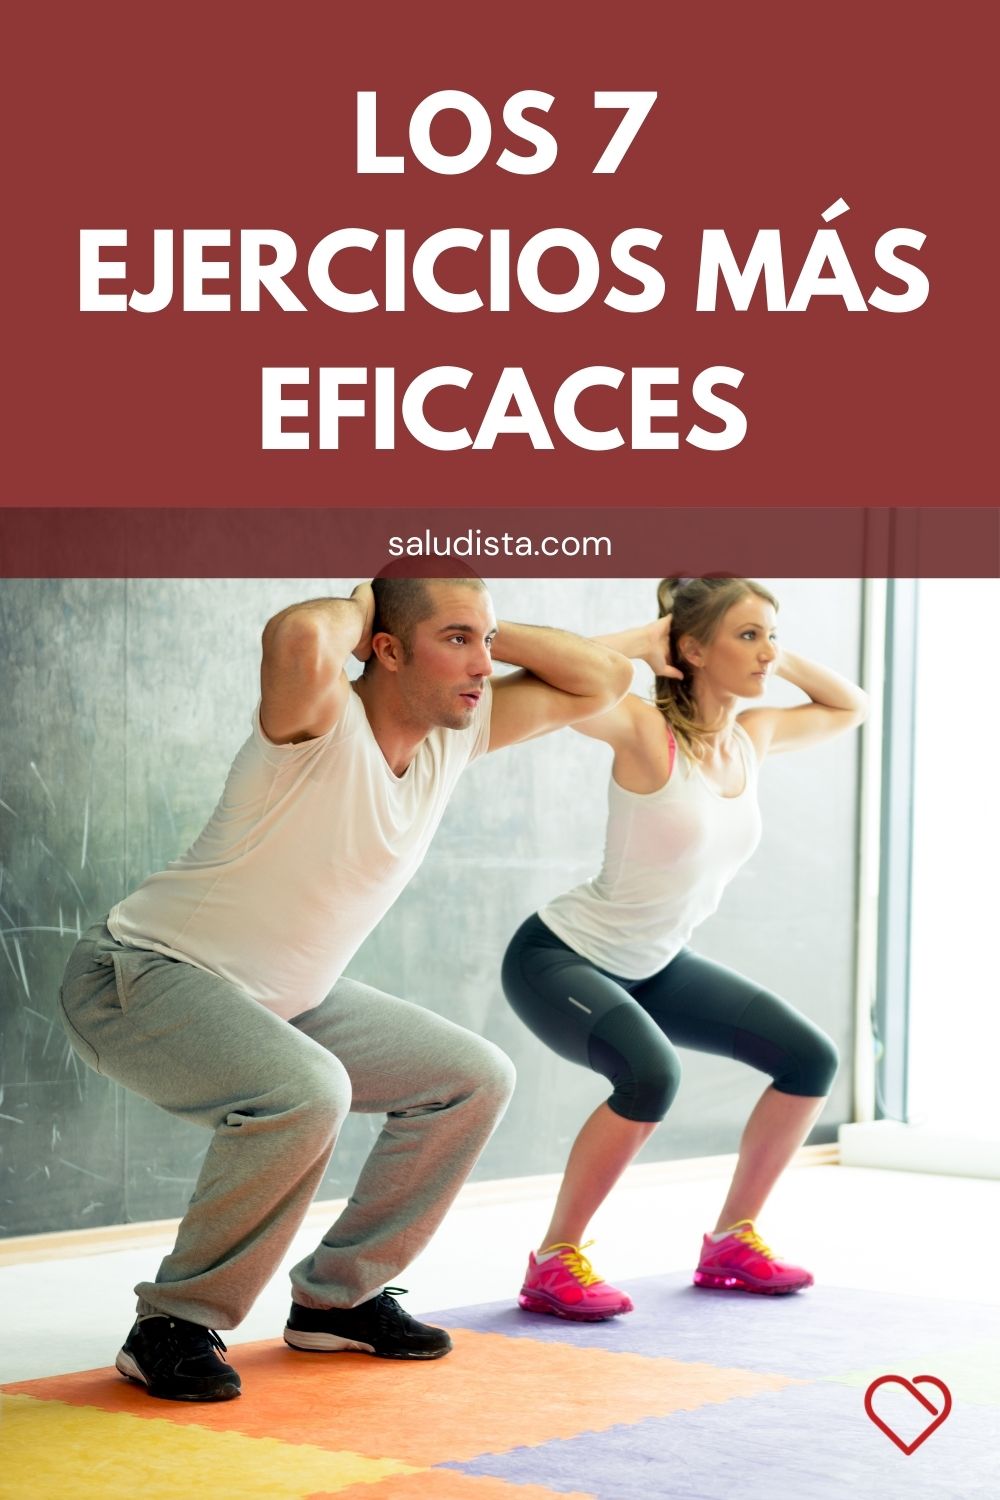 Los 7 ejercicios más eficaces